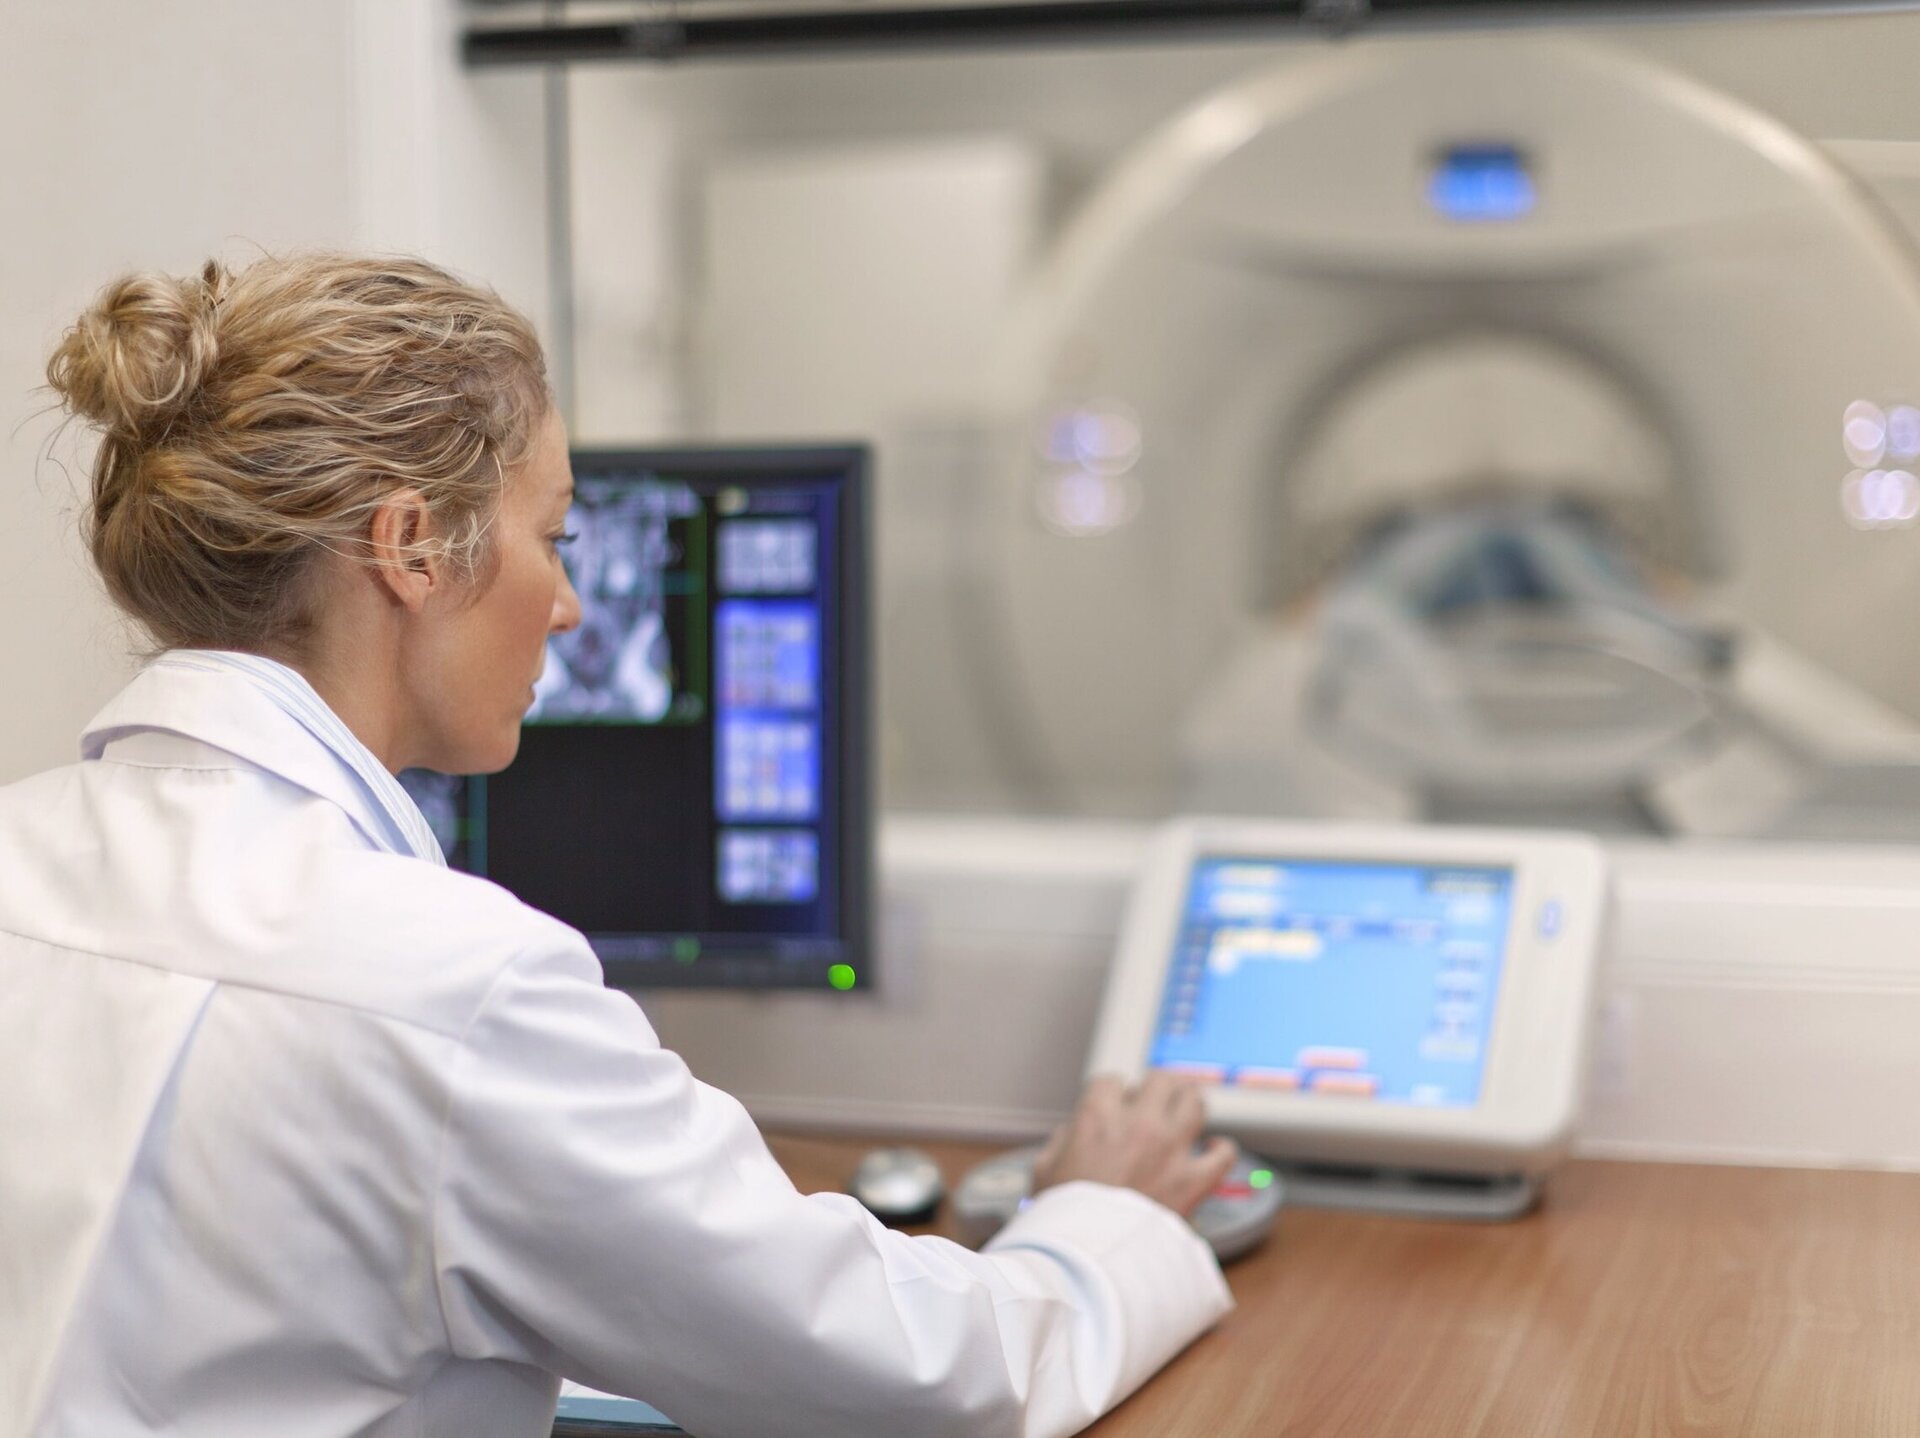 Ärztin stellt Bildschirm ein. Daneben ein Röntgenbild. Überwachung von Netzwerken und Systemen im Healthcare-Bereich. 